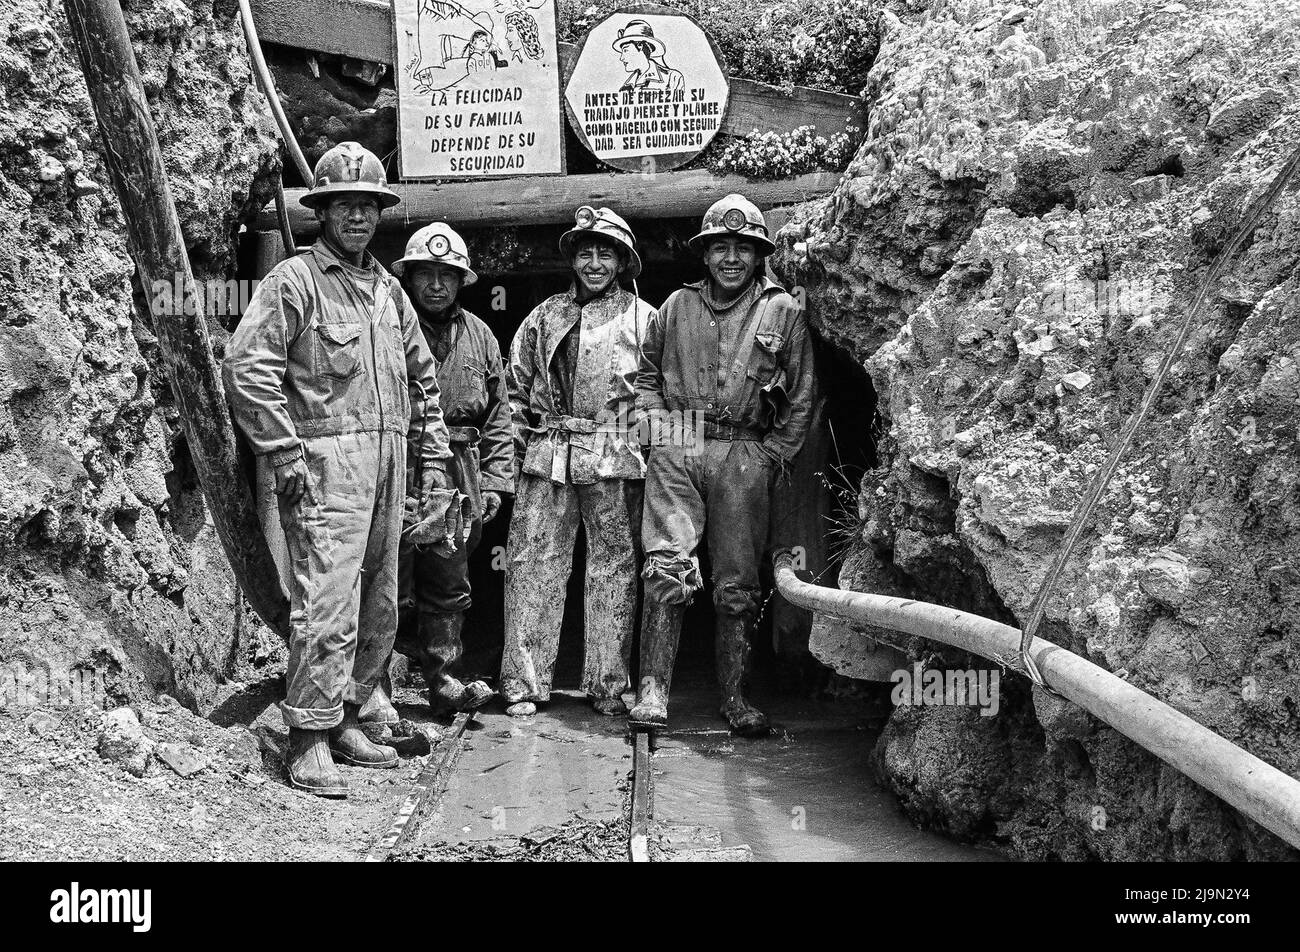 Miners in the high altitude of Cerro de Pasco, Peru Stock Photo